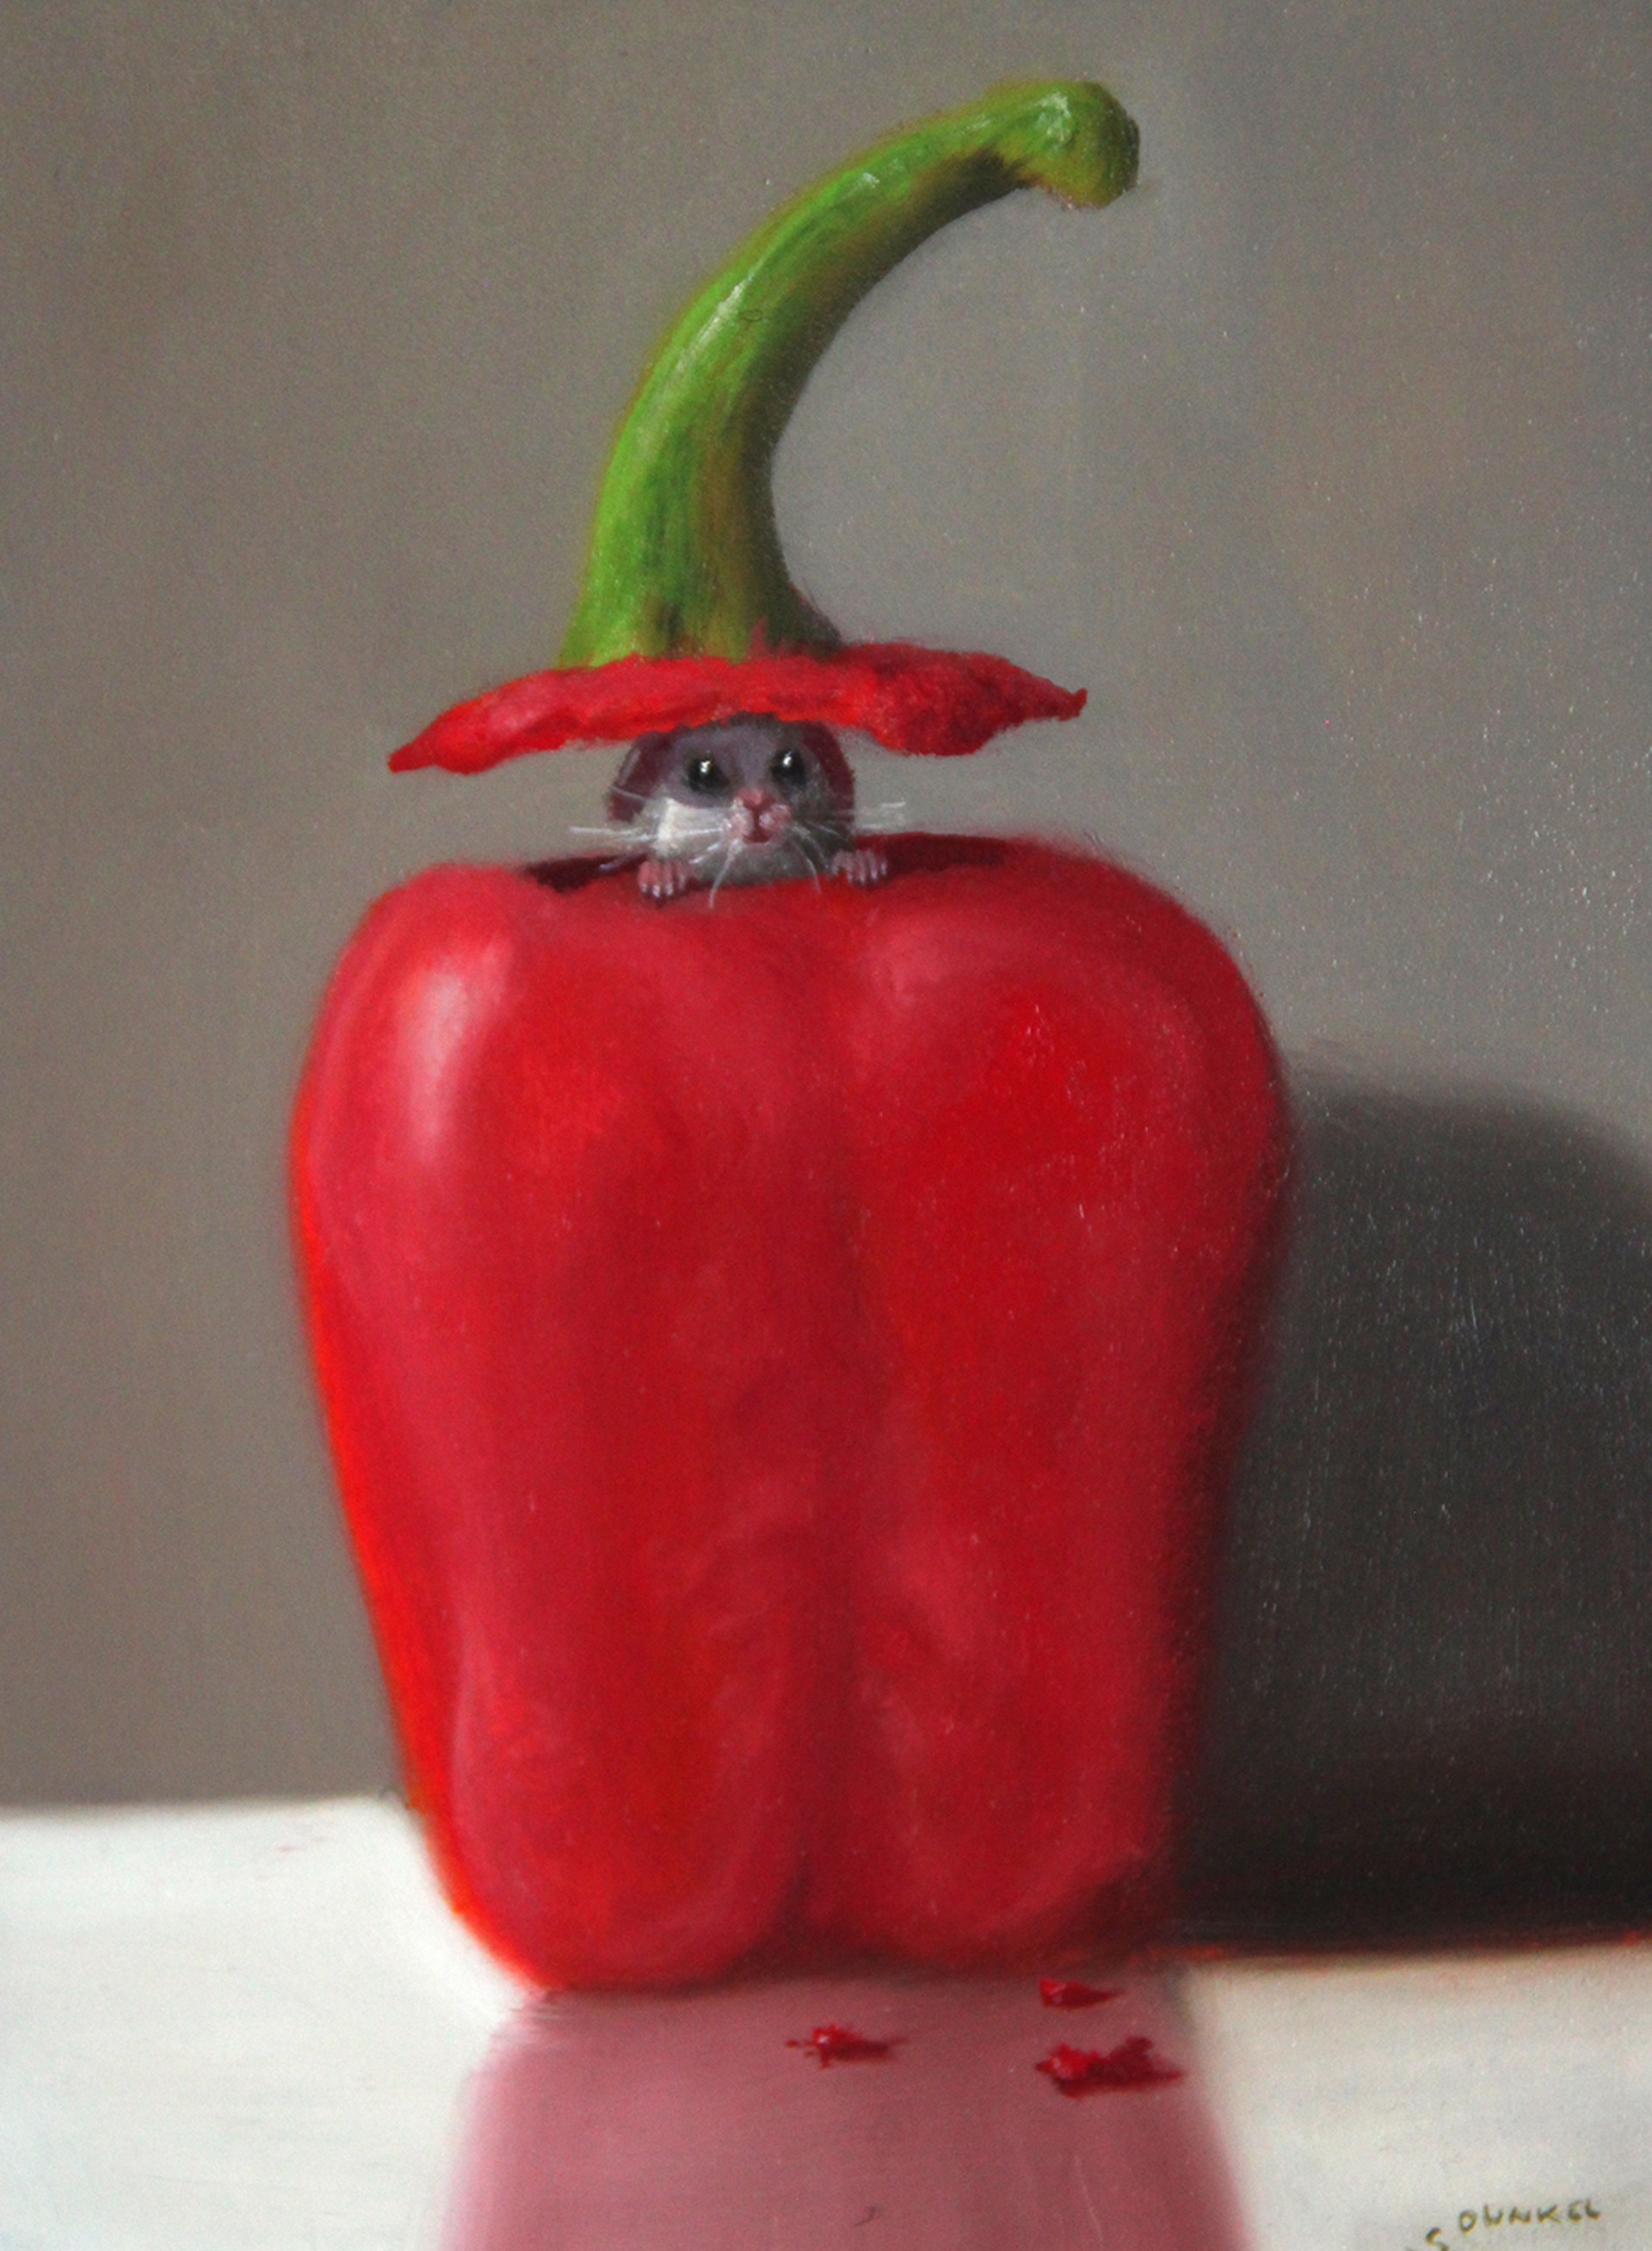 Pepper Peaker by Stuart Dunkel